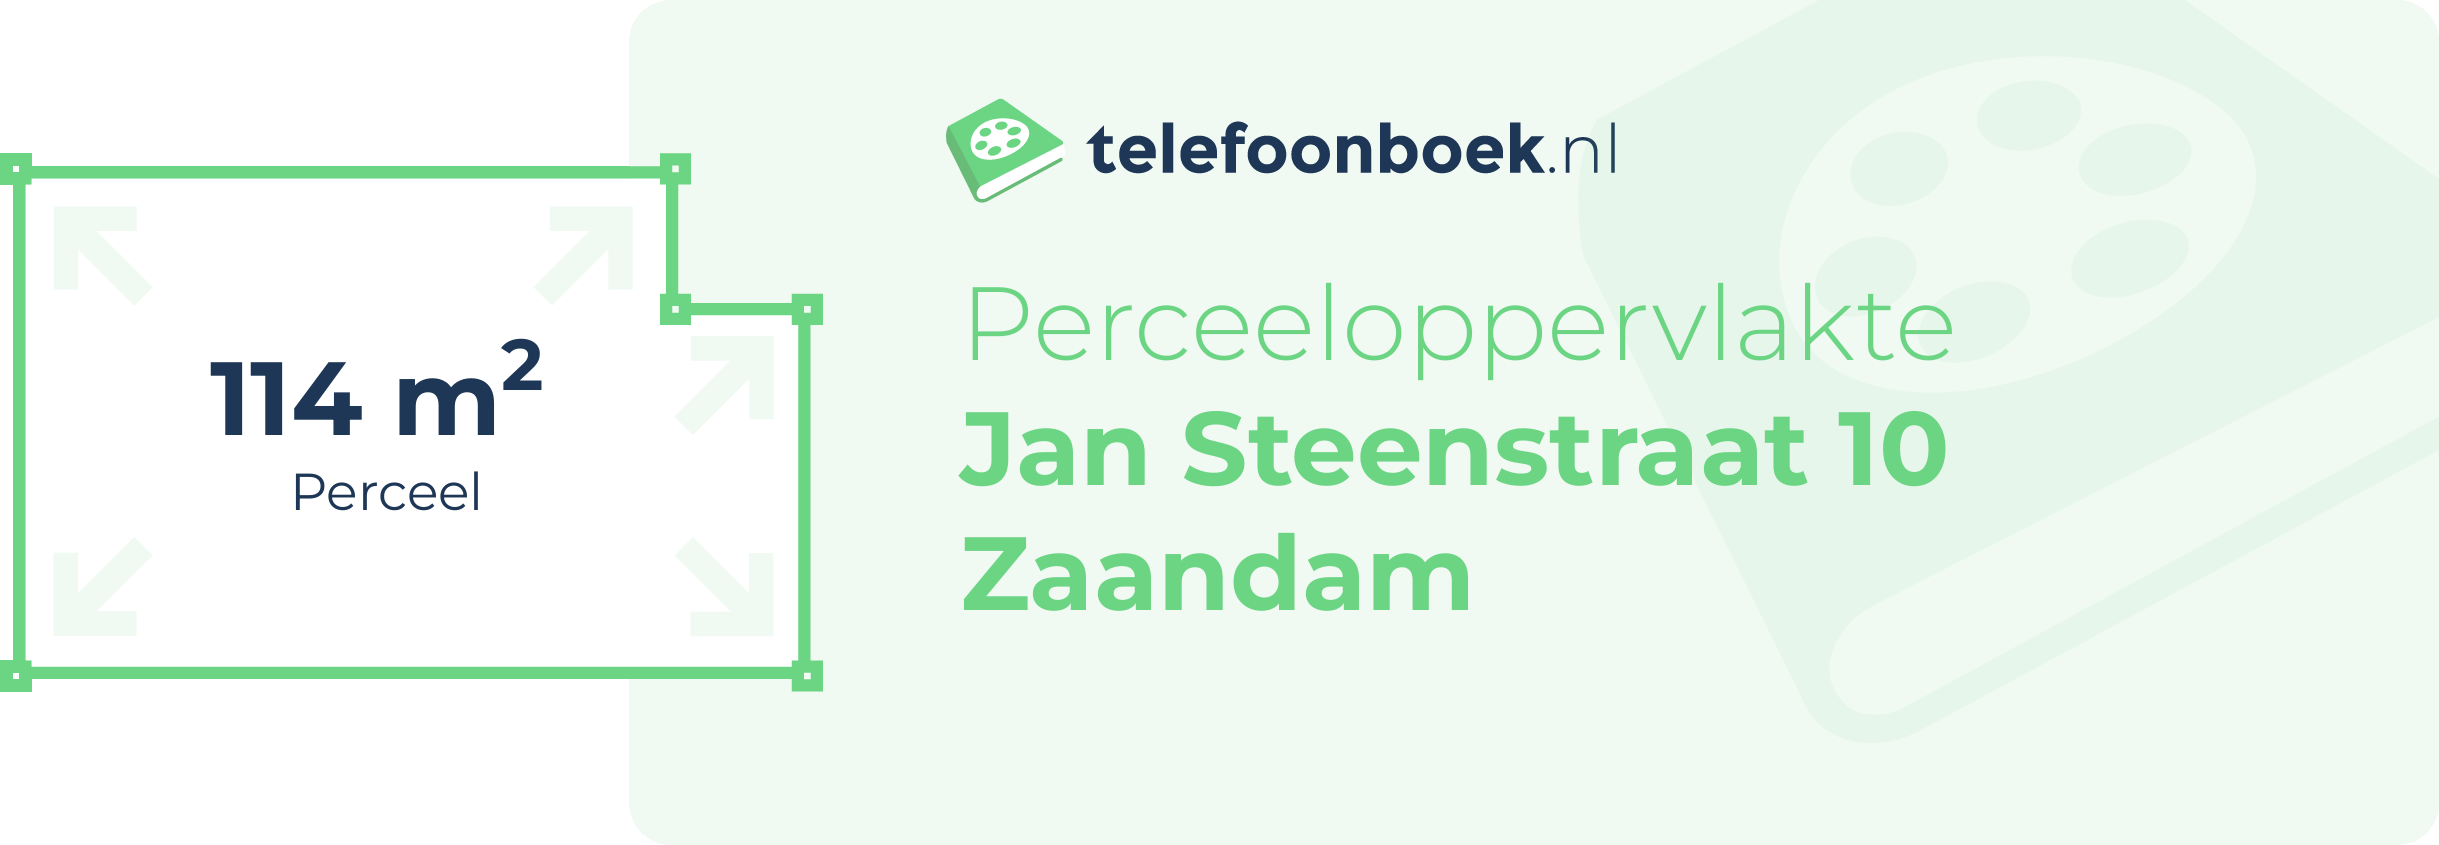 Perceeloppervlakte Jan Steenstraat 10 Zaandam